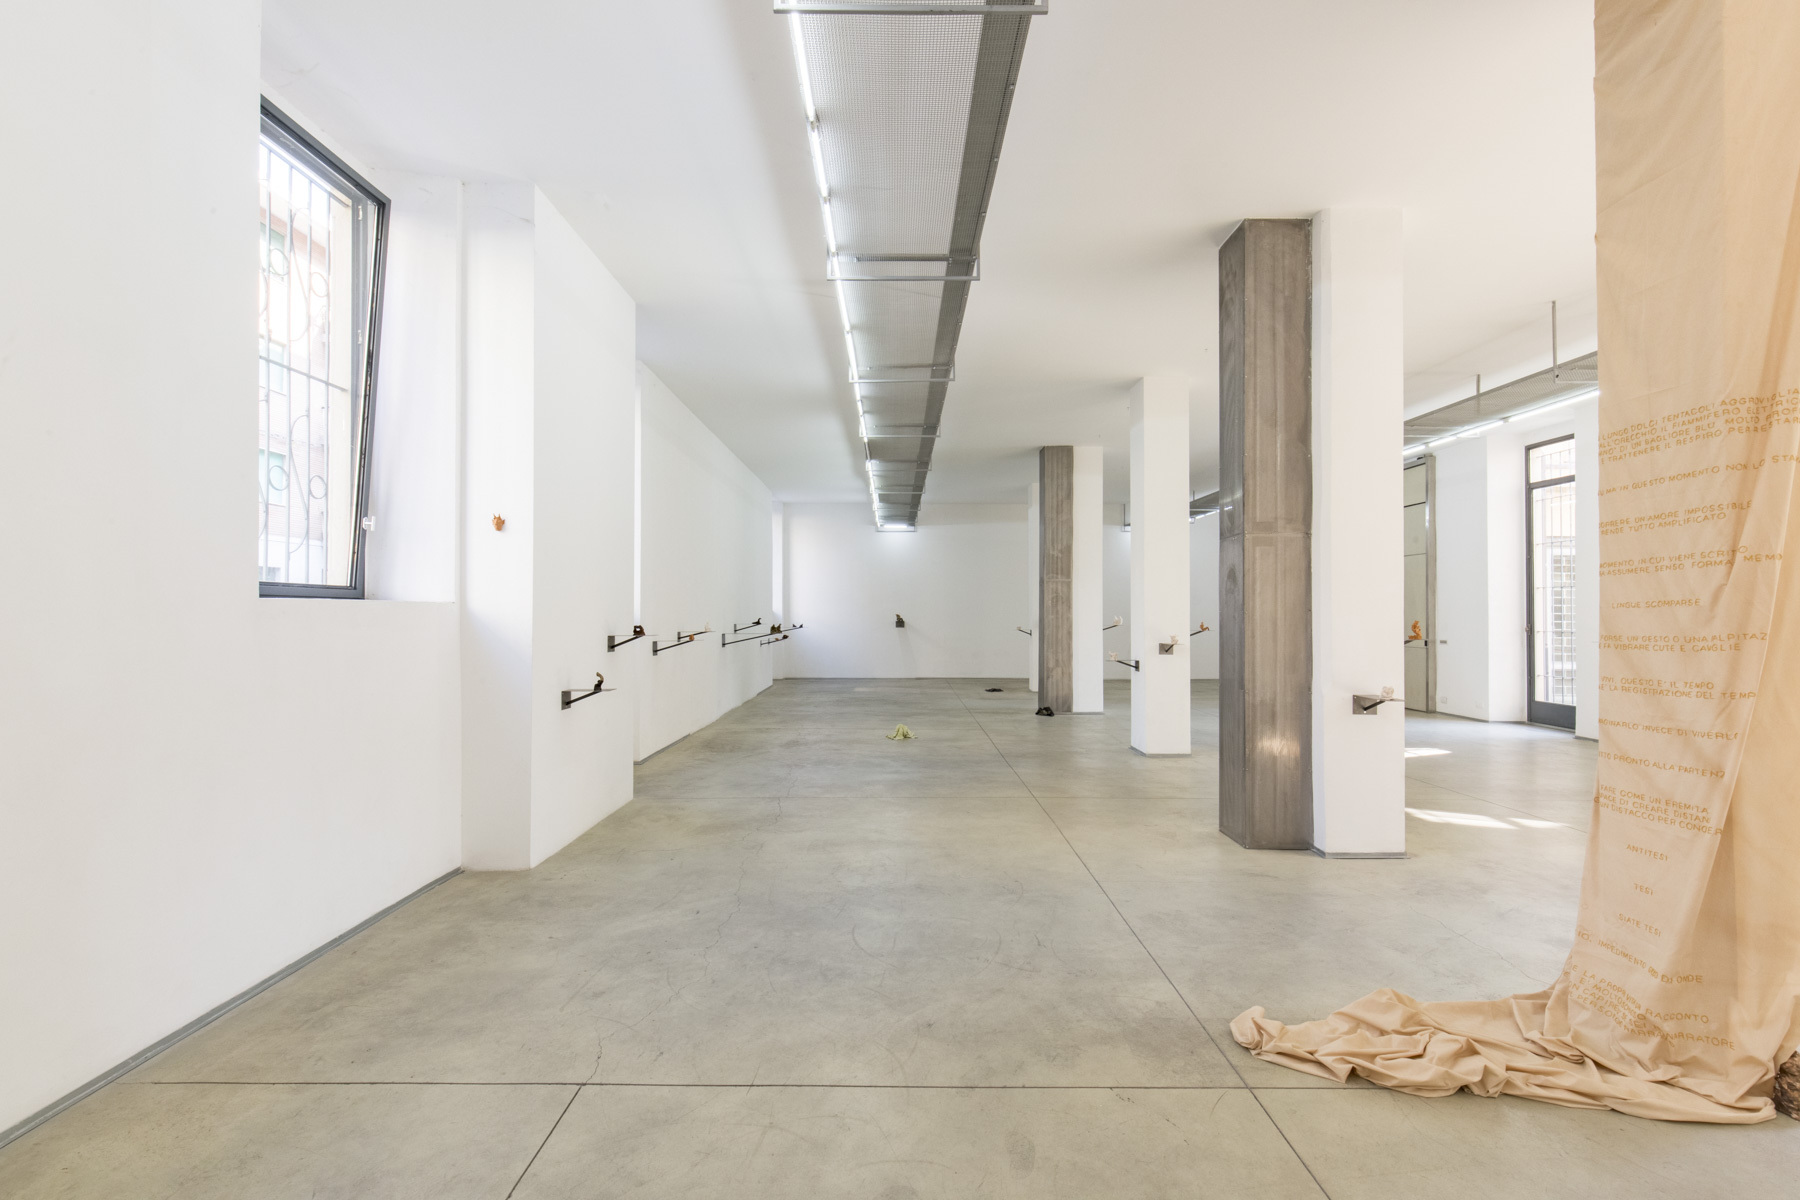 7. Matilde Sambo, Dormiveglia, exhibition view, Associazione Barriera, 2022. Photo by Gabriele Abbruzzese.